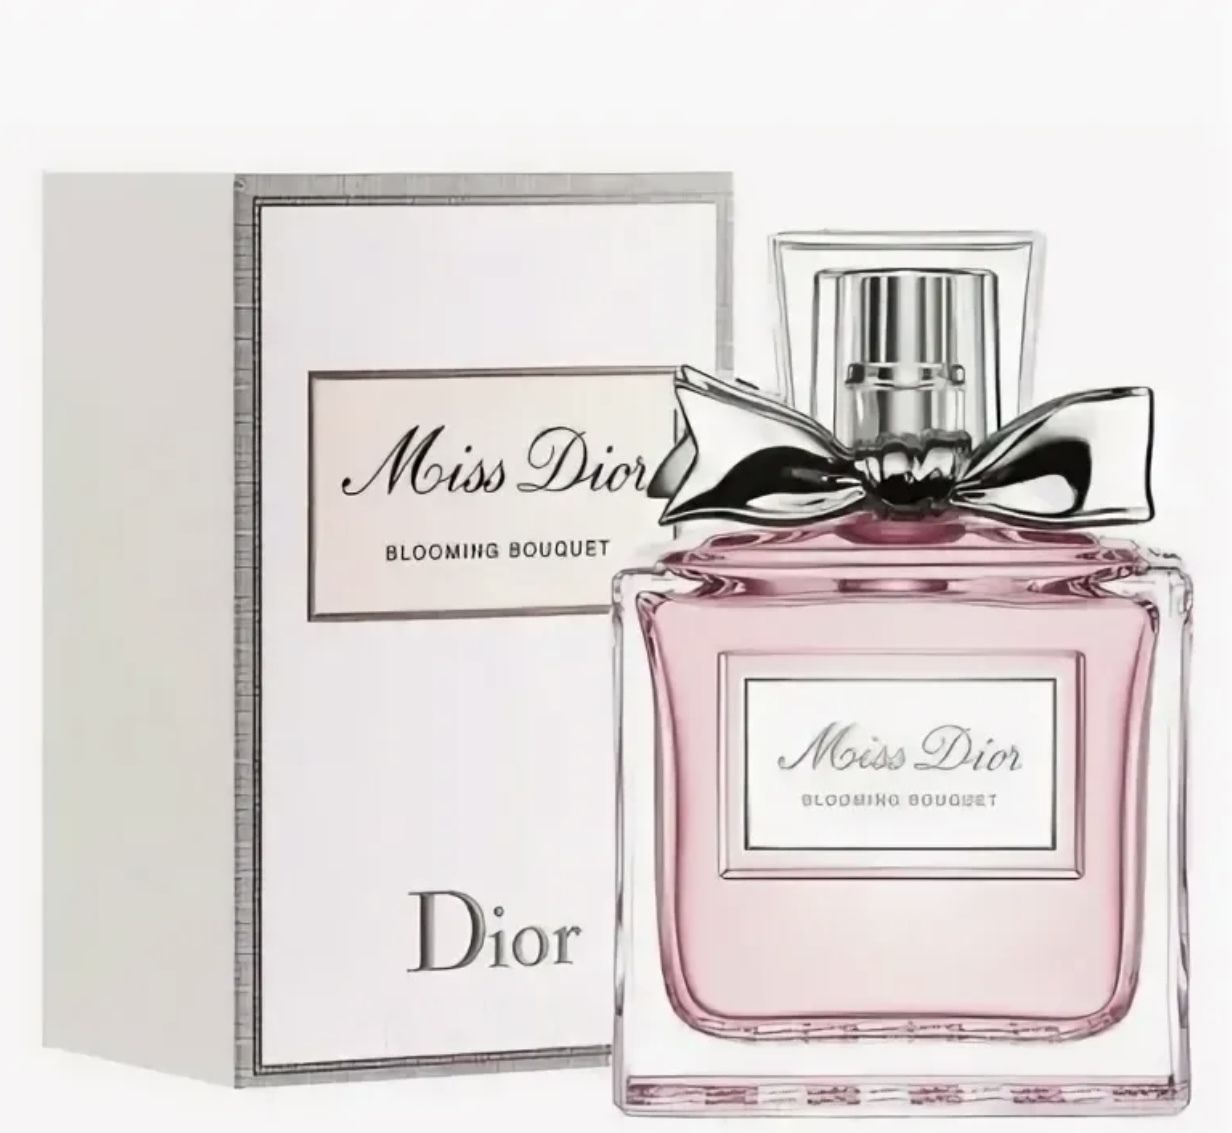 Рандеву диор. Christian Dior Miss Dior Cherie Blooming Bouquet. Christian Dior Miss Dior Eau de Toilette. Dior Miss Dior Blooming Bouquet Lady 50ml EDT. Christian Dior Miss Dior EDP, 100 ml.